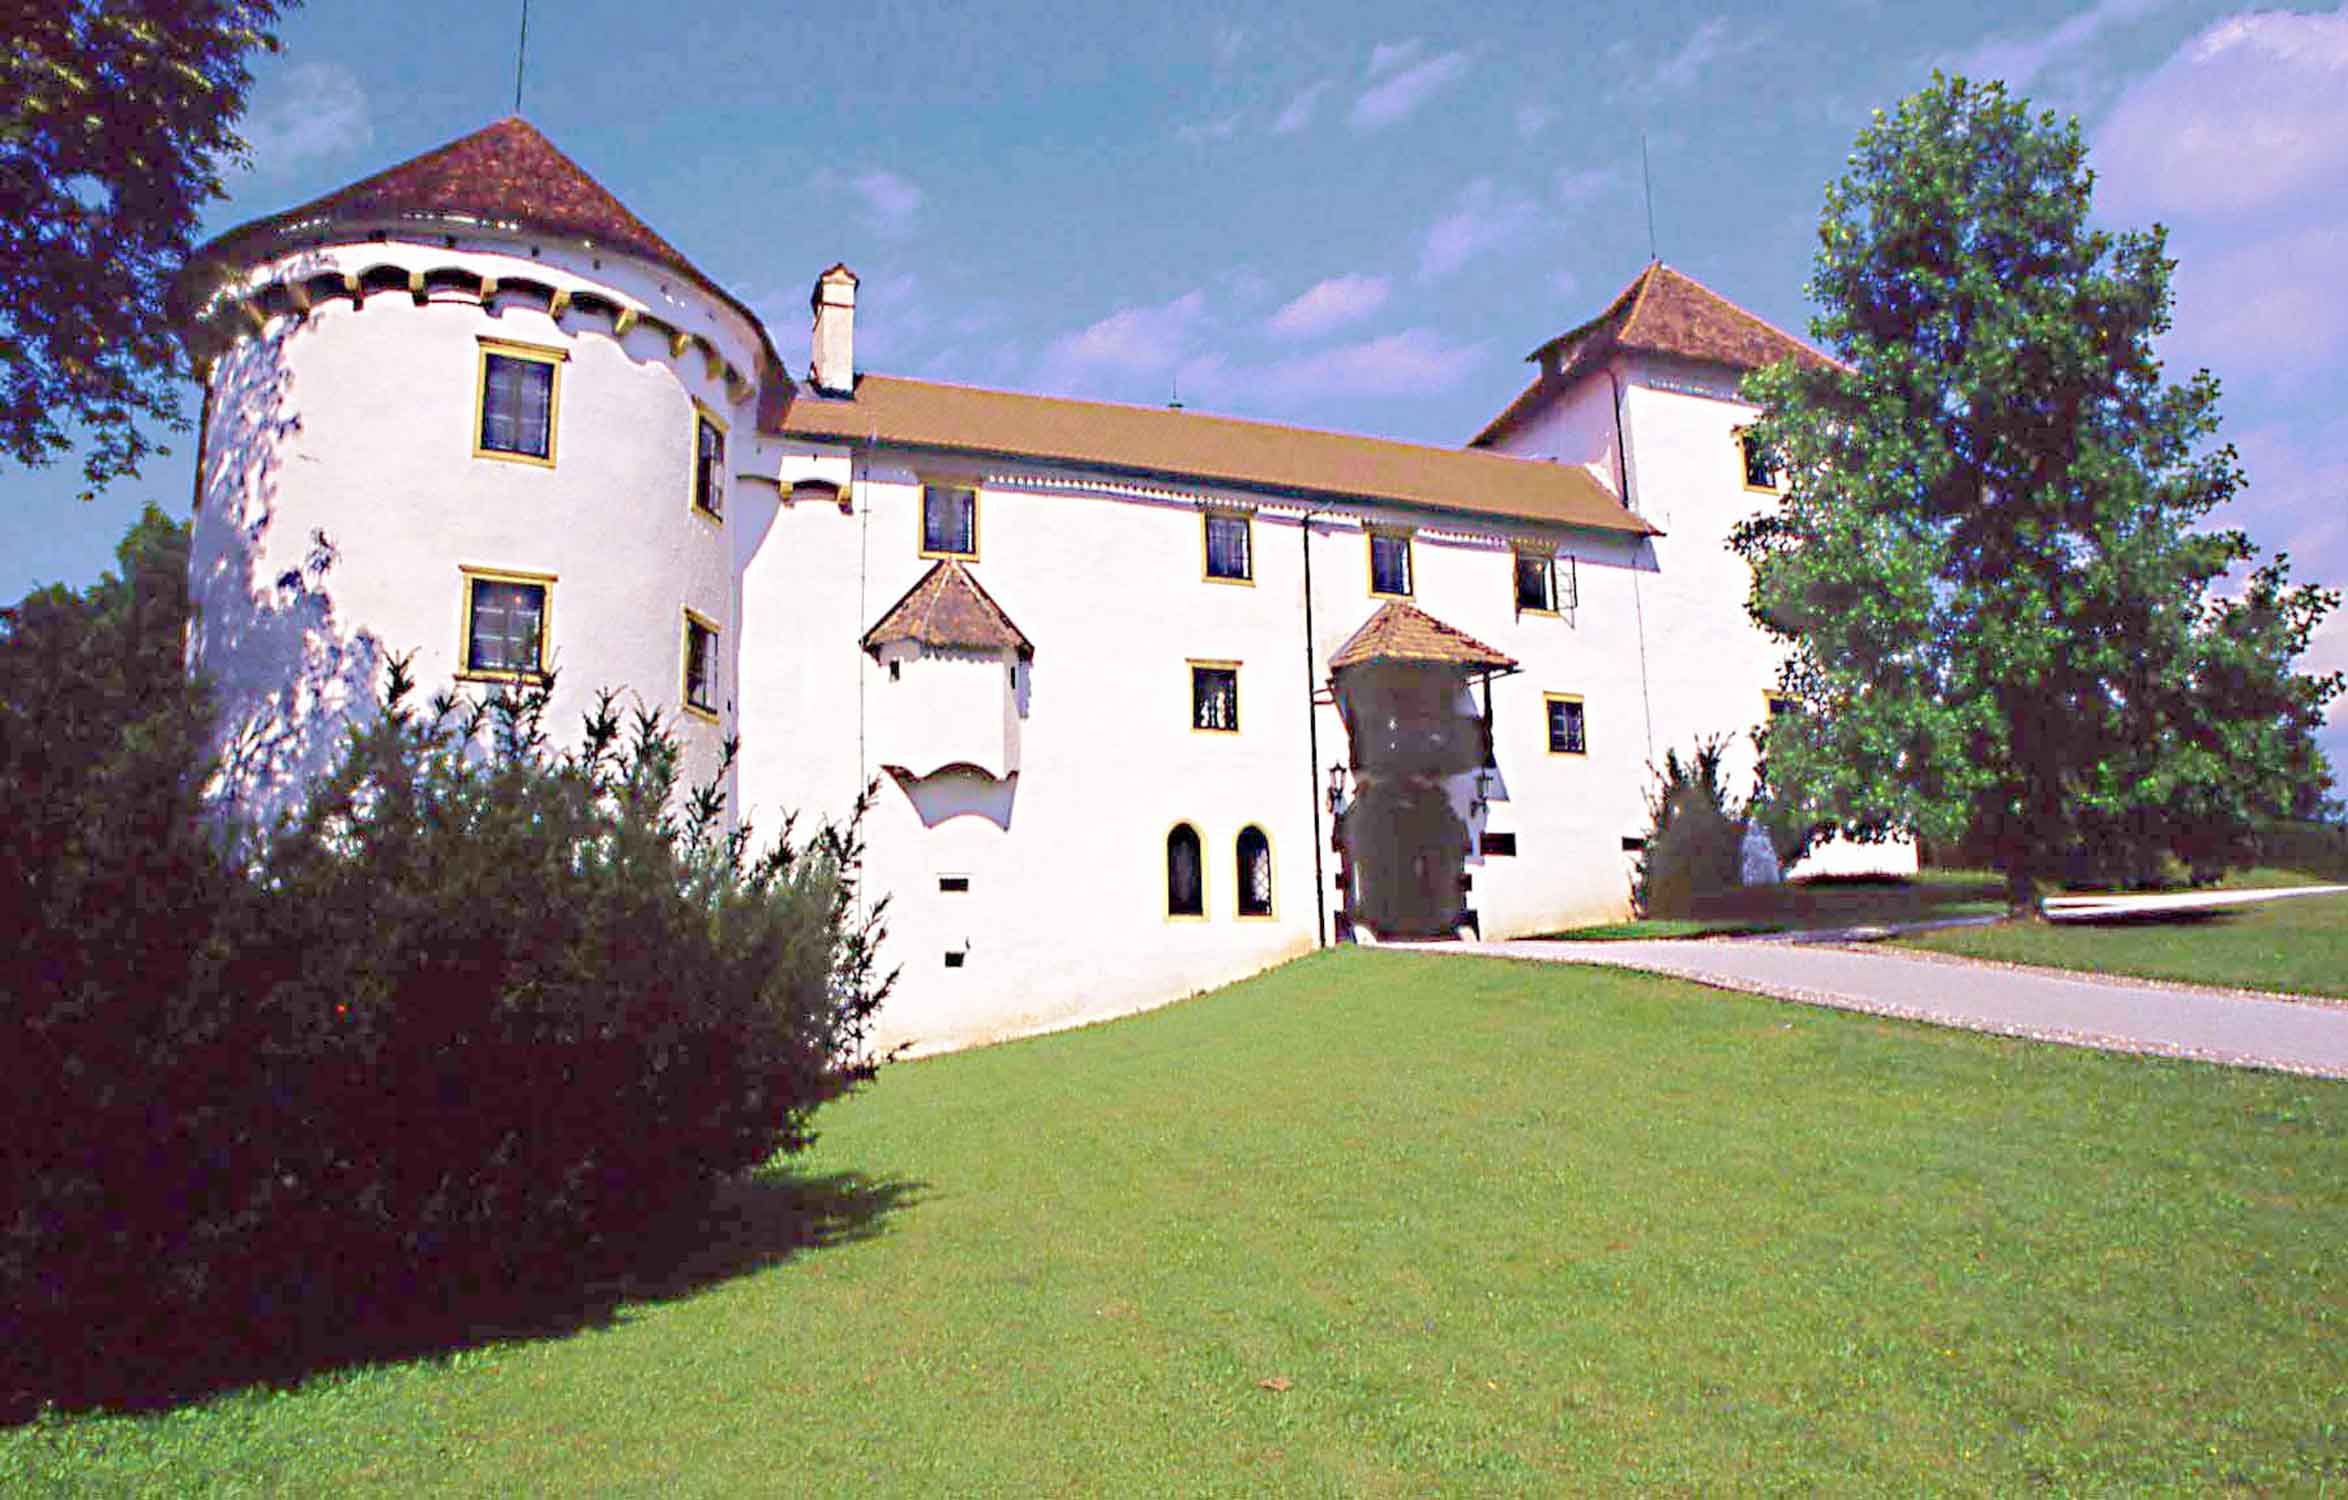 valva01m Bogensperk castello